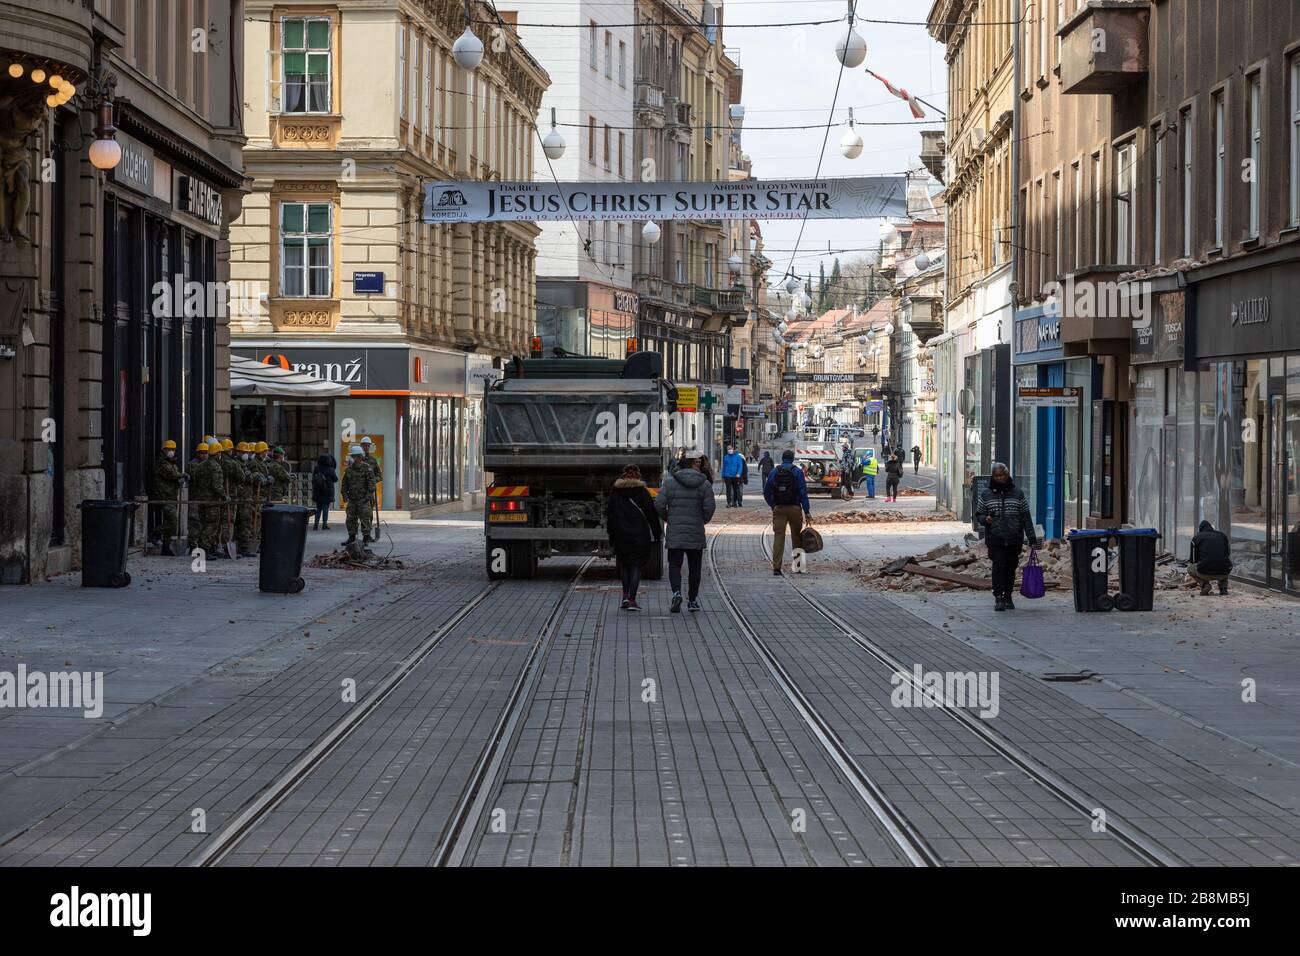 Séisme dans le centre de Zagreb, rue Ilica, armée croate aidant à nettoyer la ville après le tremblement de terre 22 Marth 2020. Banque D'Images